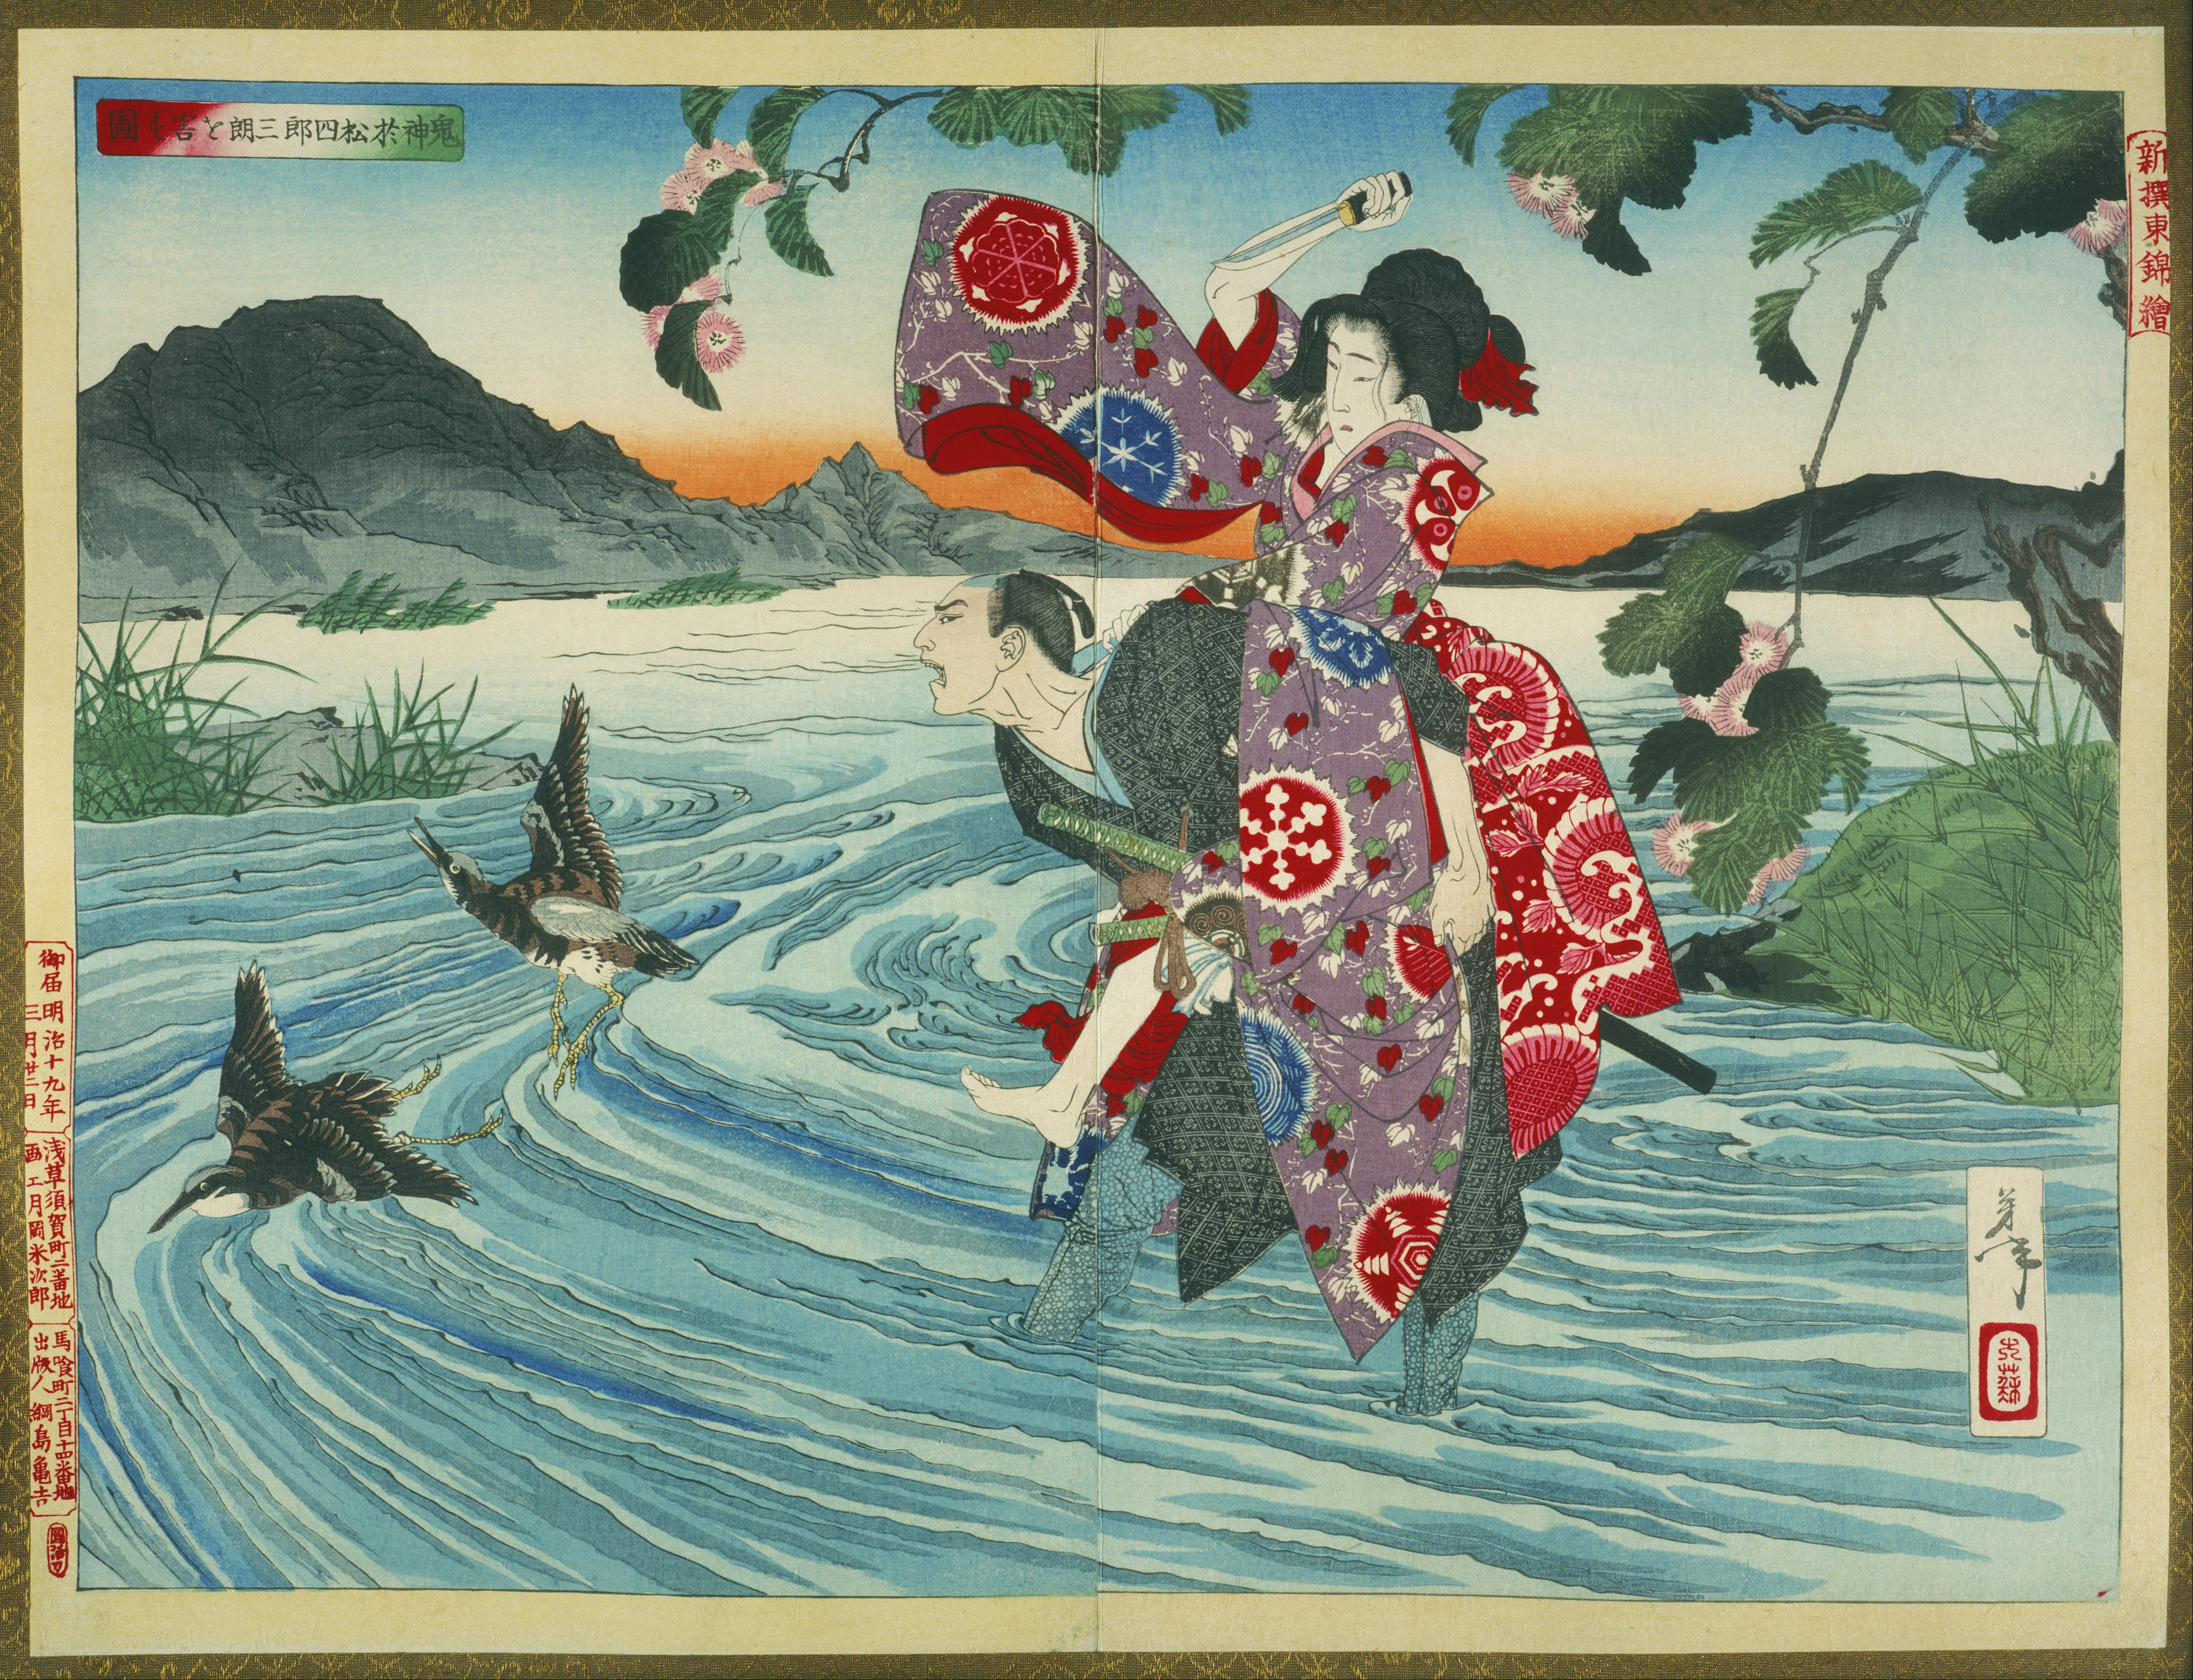 냇가에서 시로사부로를 살해하는 악마 오마츠(The Demon Omatsu Murders Shirosaburō in the Ford) by Tsukioka Yoshitoshi - 1885 - 39.39 x 53.39 cm 